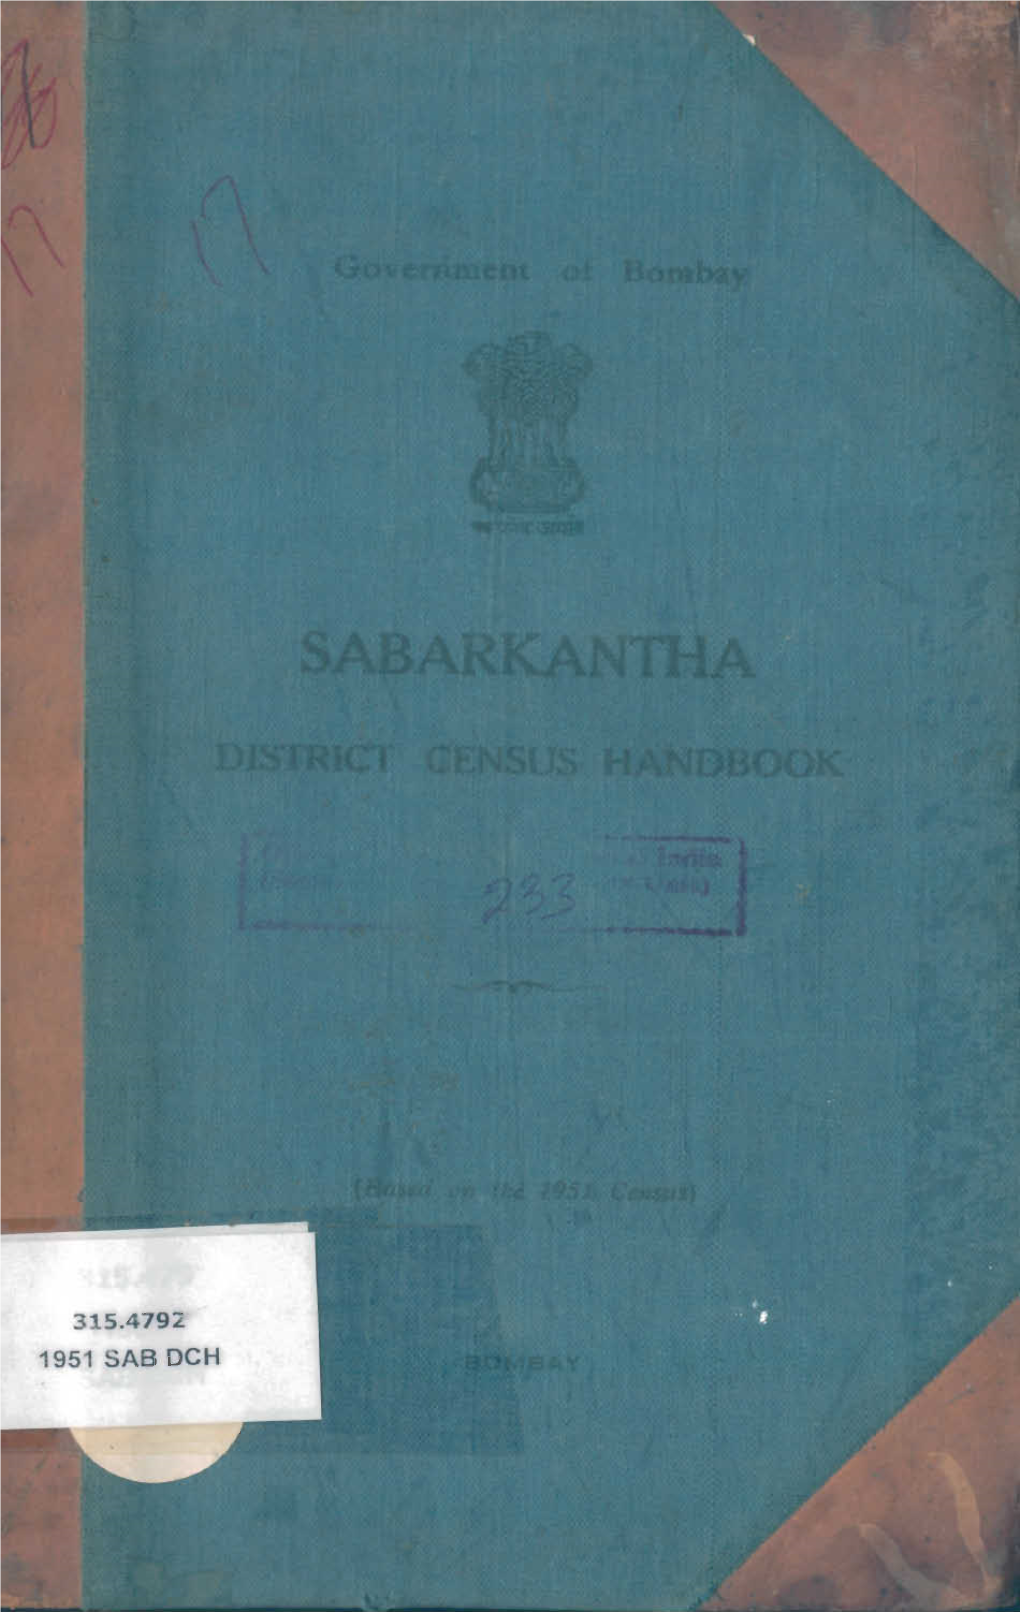 District Census Handbook, Sabarkantha